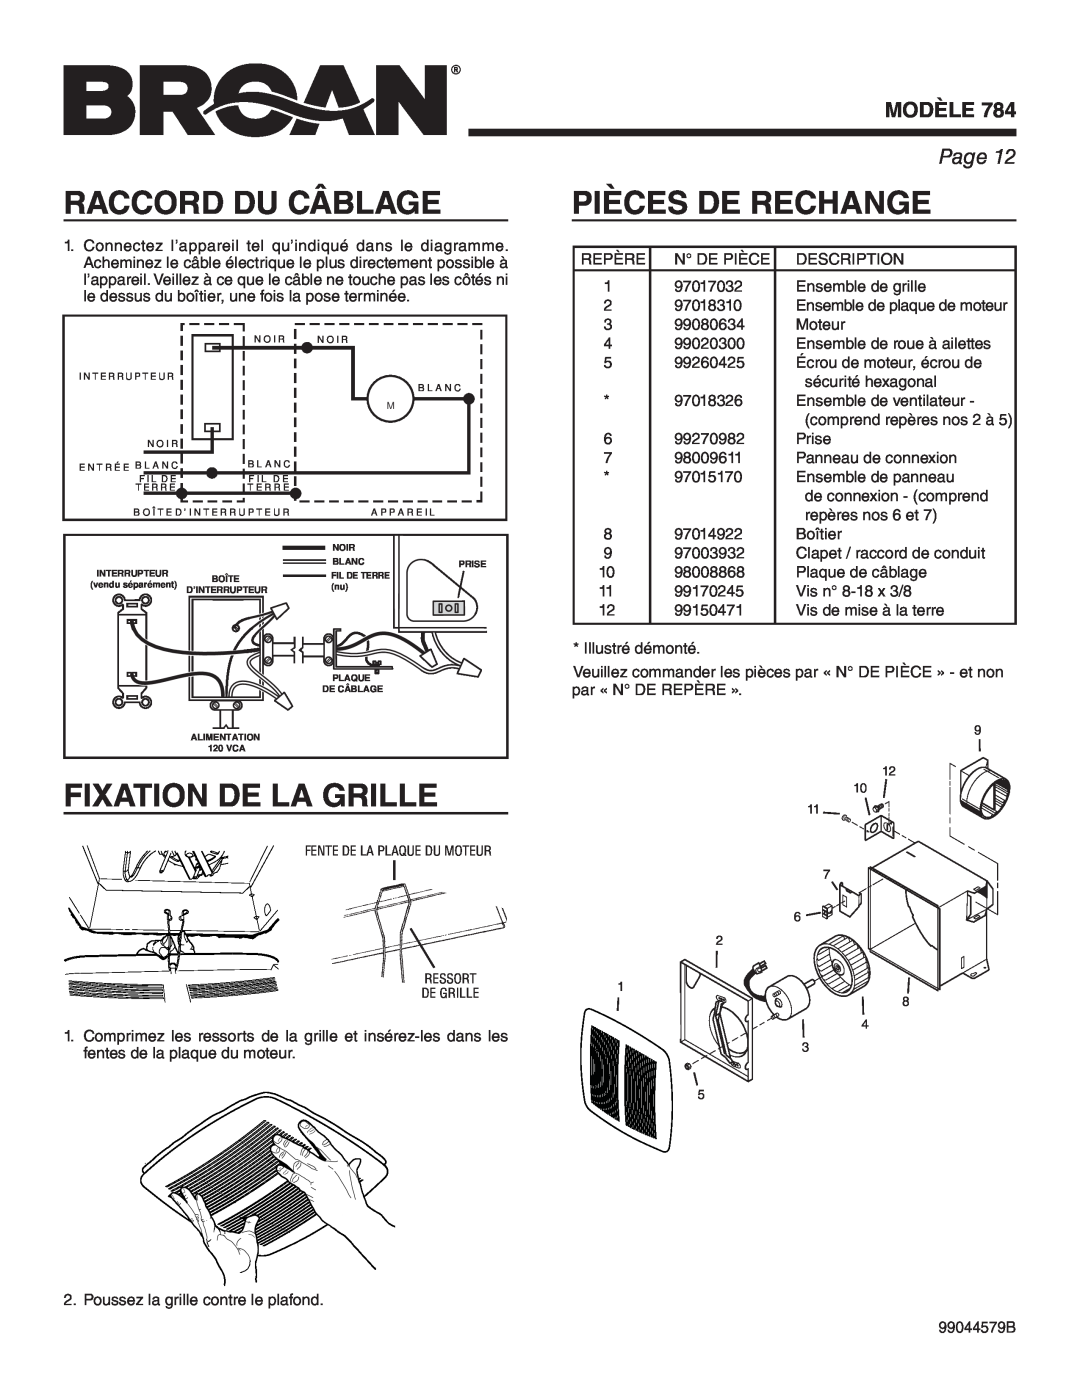 Broan 784 manual Raccord Du Câblage, Pièces De Rechange, Fixation De La Grille, Modèle, Page 